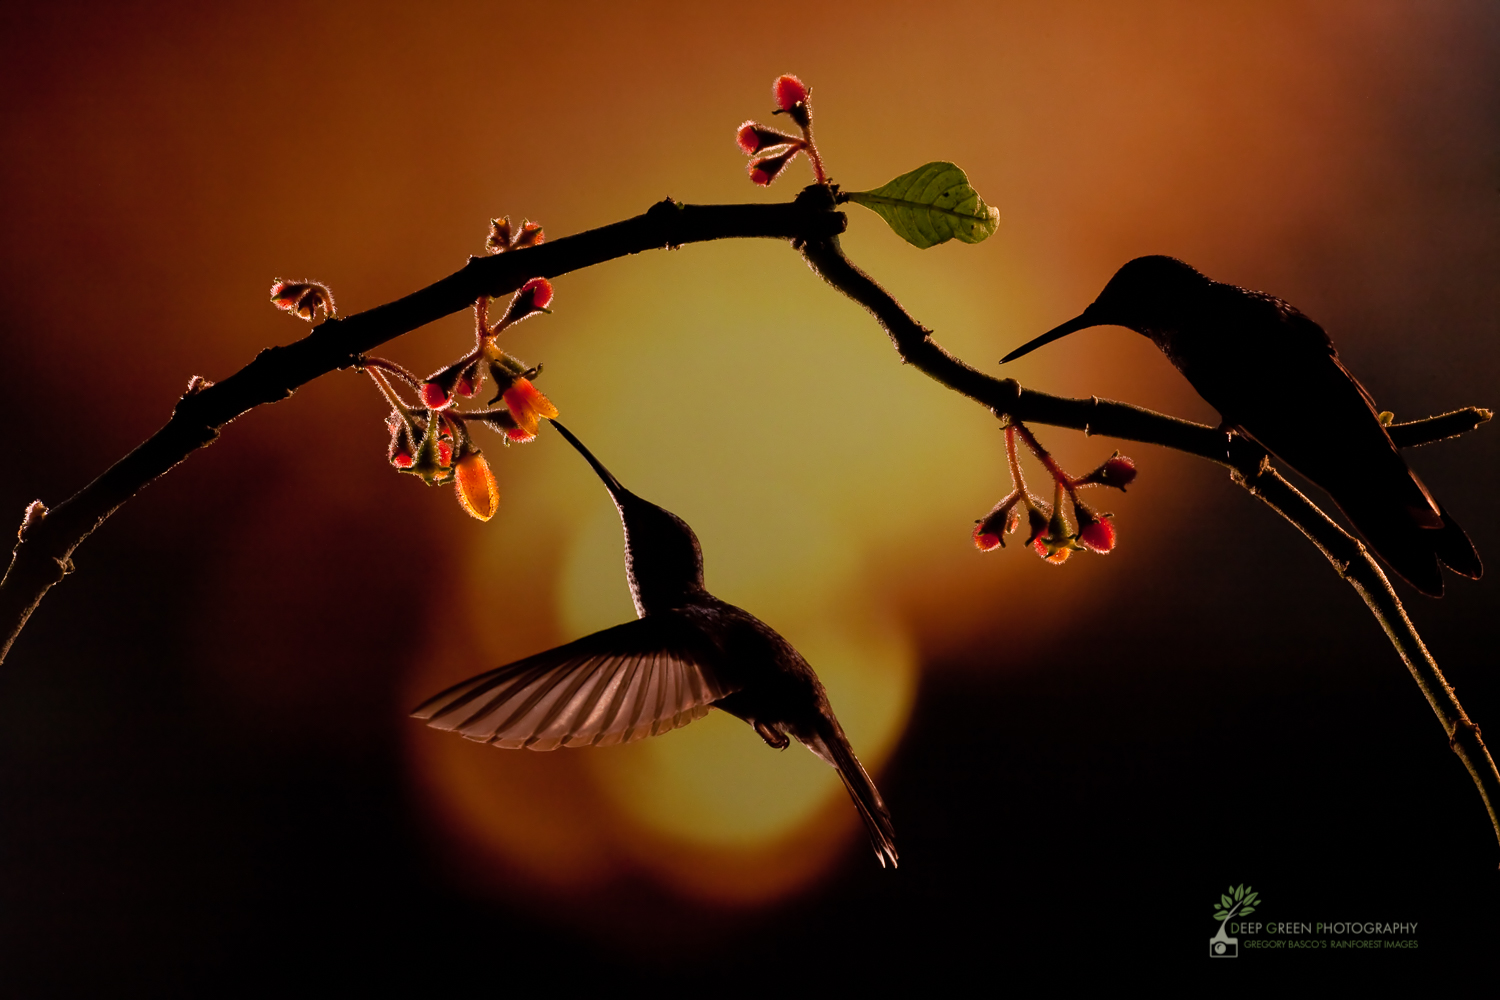 Tìm kiếm sự độc đáo của thiên nhiên, câu chuyện tràn ngập vẻ đẹp tự nhiên của các loài chim và thú hoang dã. Những hình ảnh về chủ đề Wildlife photography - Hummingbirds sẽ mang đến cho bạn cơ hội thưởng thức những hình ảnh đầy màu sắc và sống động nhất.